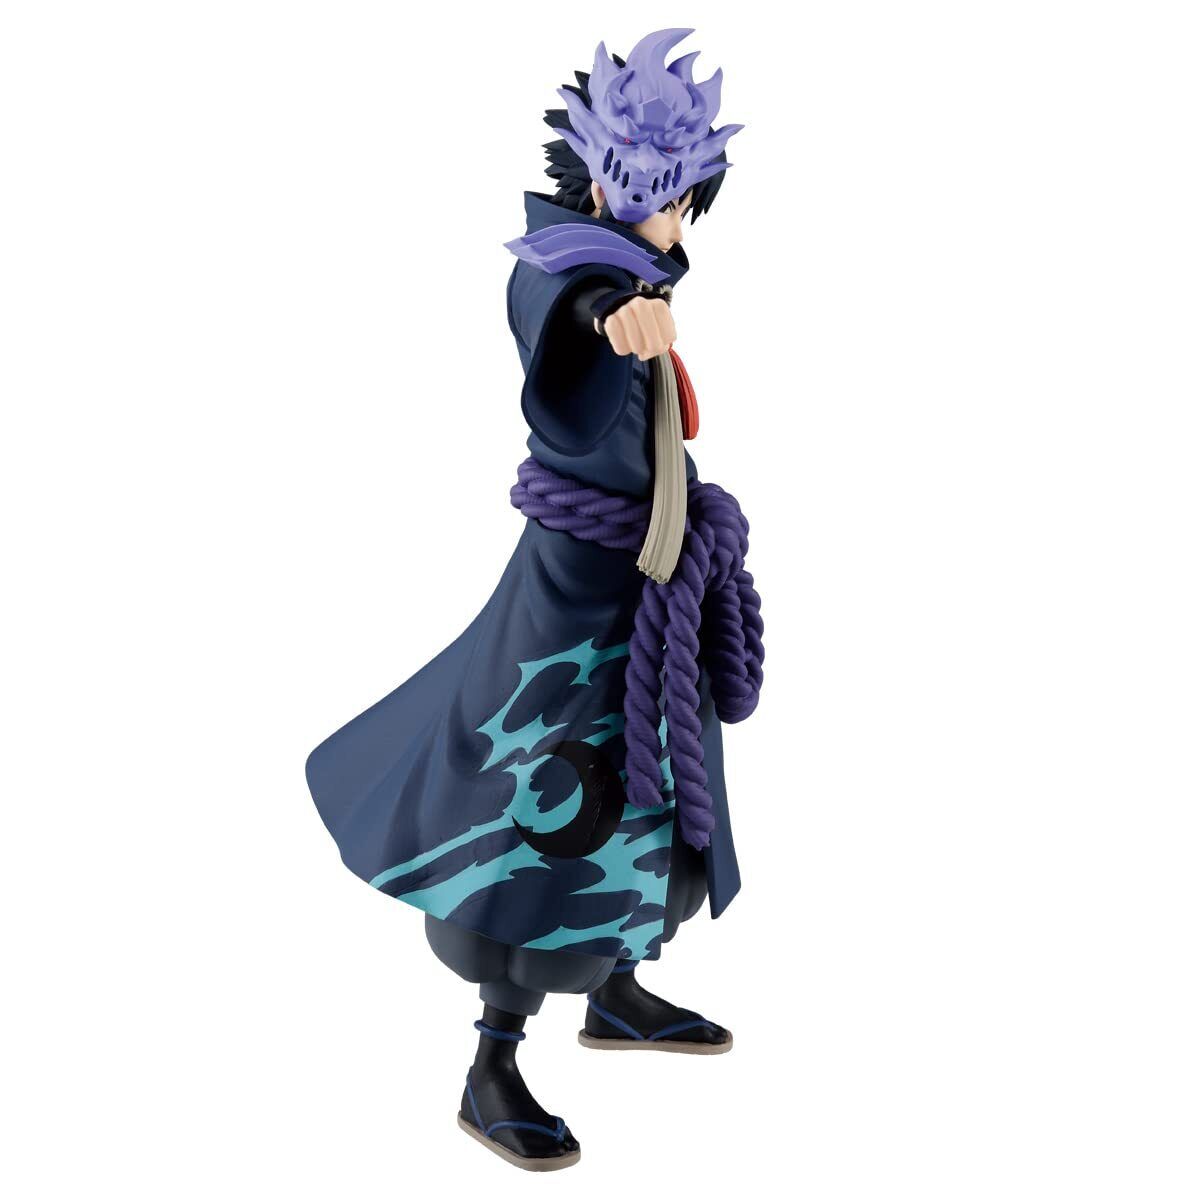 Naruto Shippuden - Sasuke Uchiha (20th Anniversary Costume Ver.) Figure